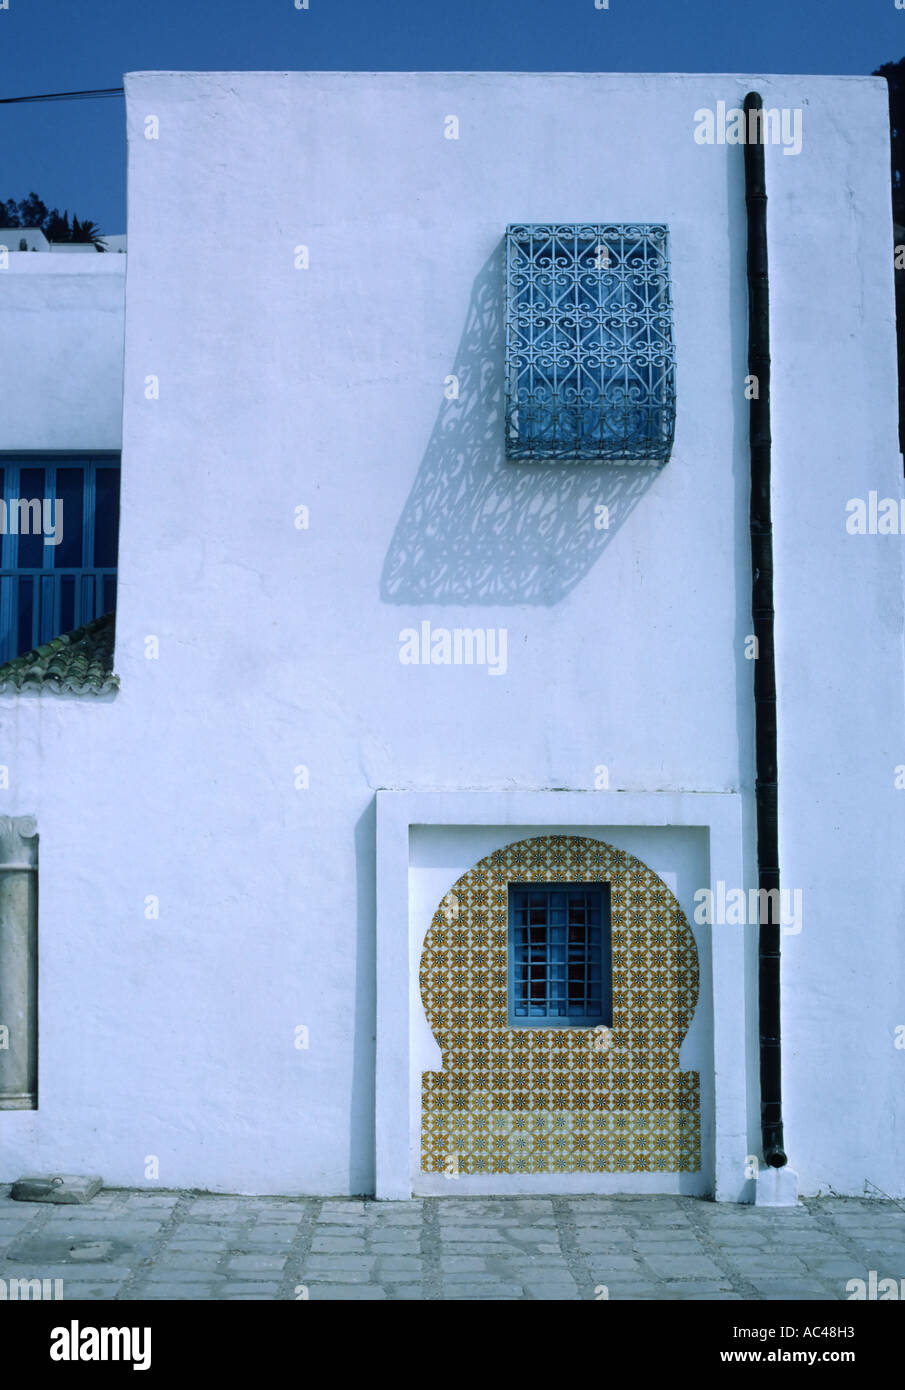 Détail de fenêtres d'une maison à Sidi Bou Said Tunisie Afrique du Nord Banque D'Images